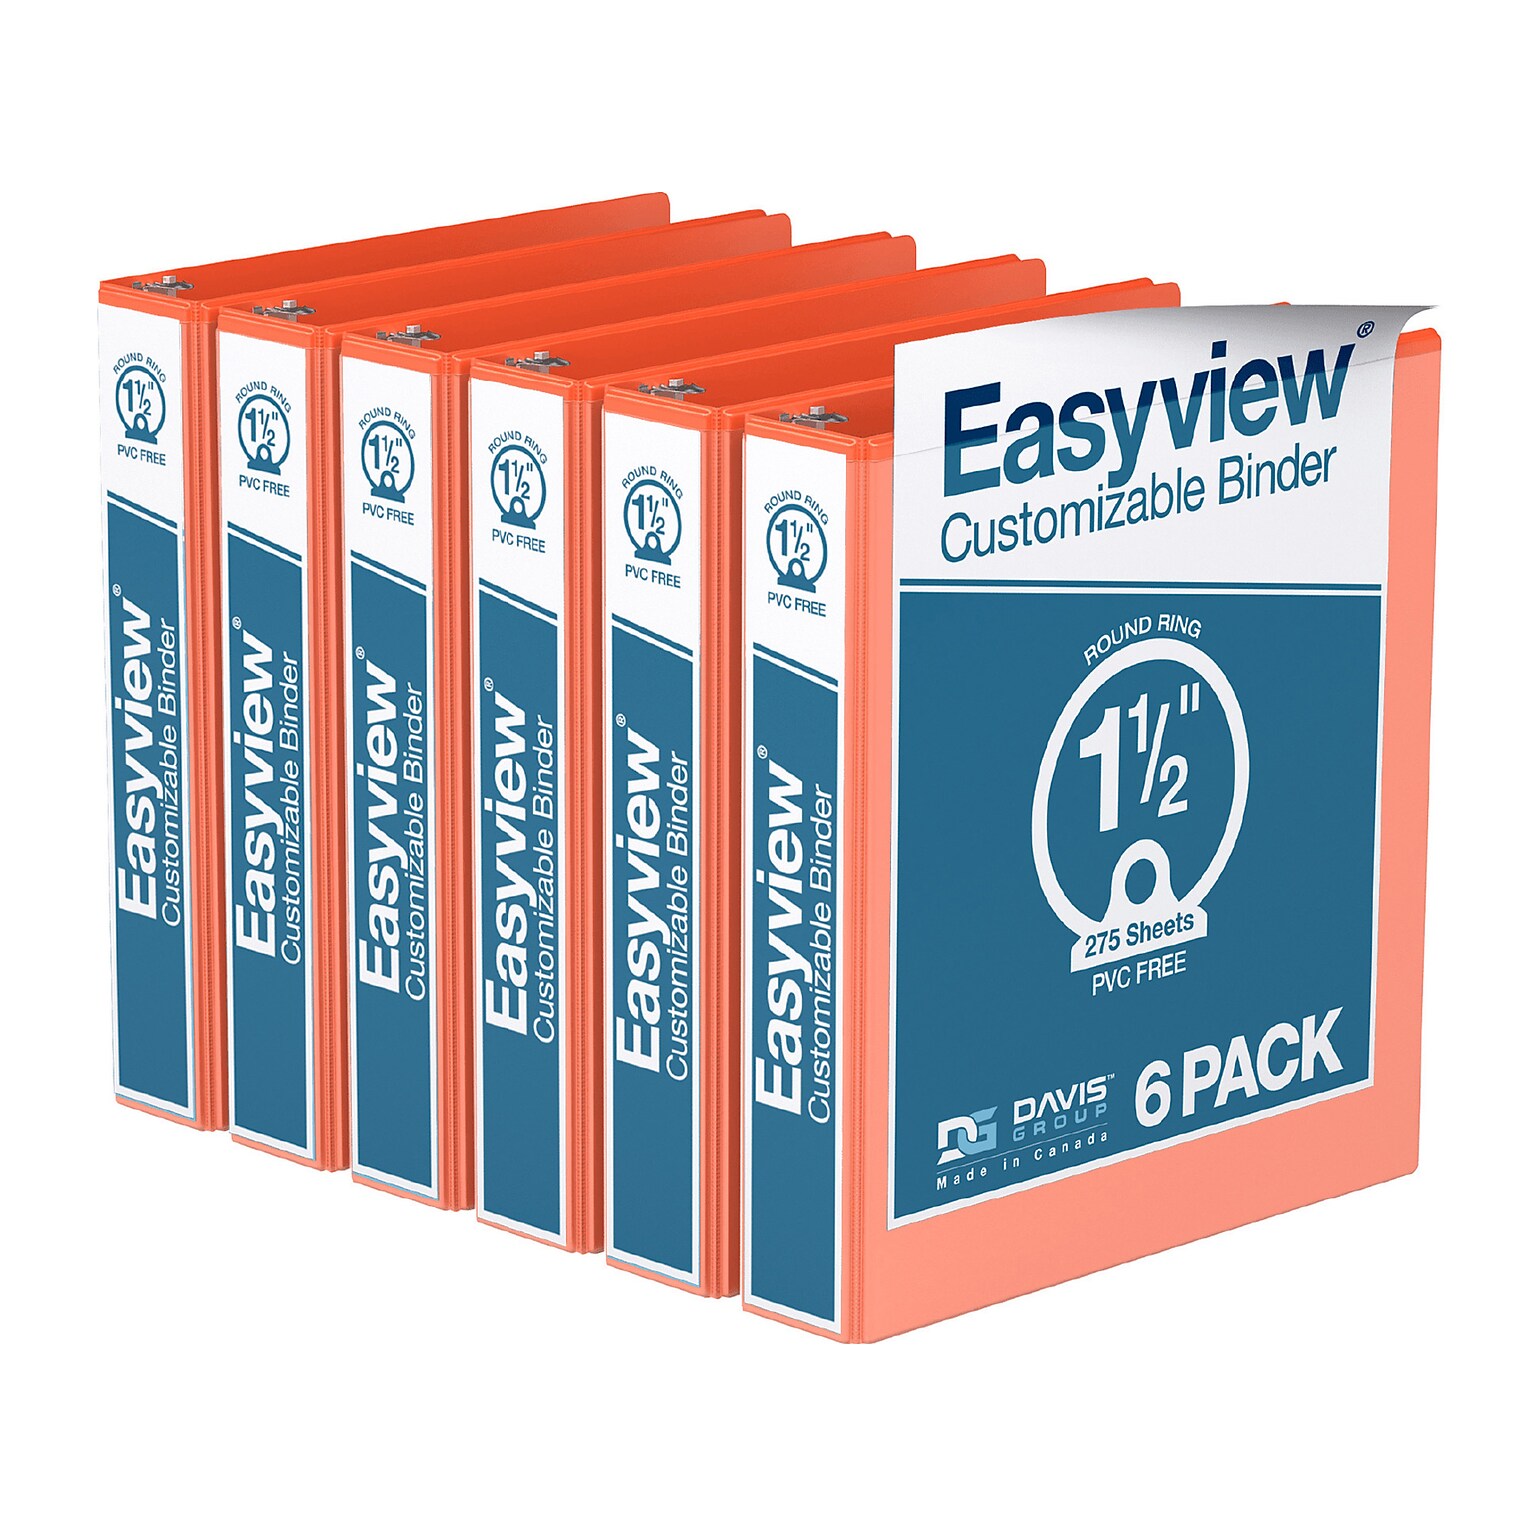 Davis Group Easyview Premium 1 1/2 3-Ring View Binders, Orange, 6/Pack (8412-19-06)